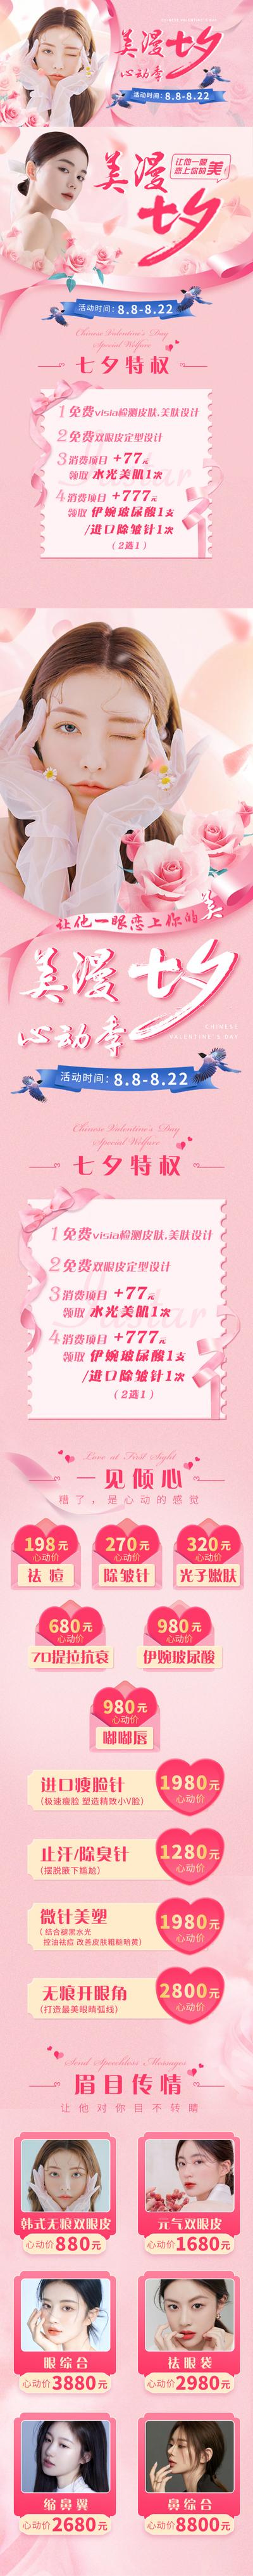 南门网 专题设计 长图 医美 整形 美容 七夕 中国传统节日 促销 粉色 浪漫 玫瑰 丝带